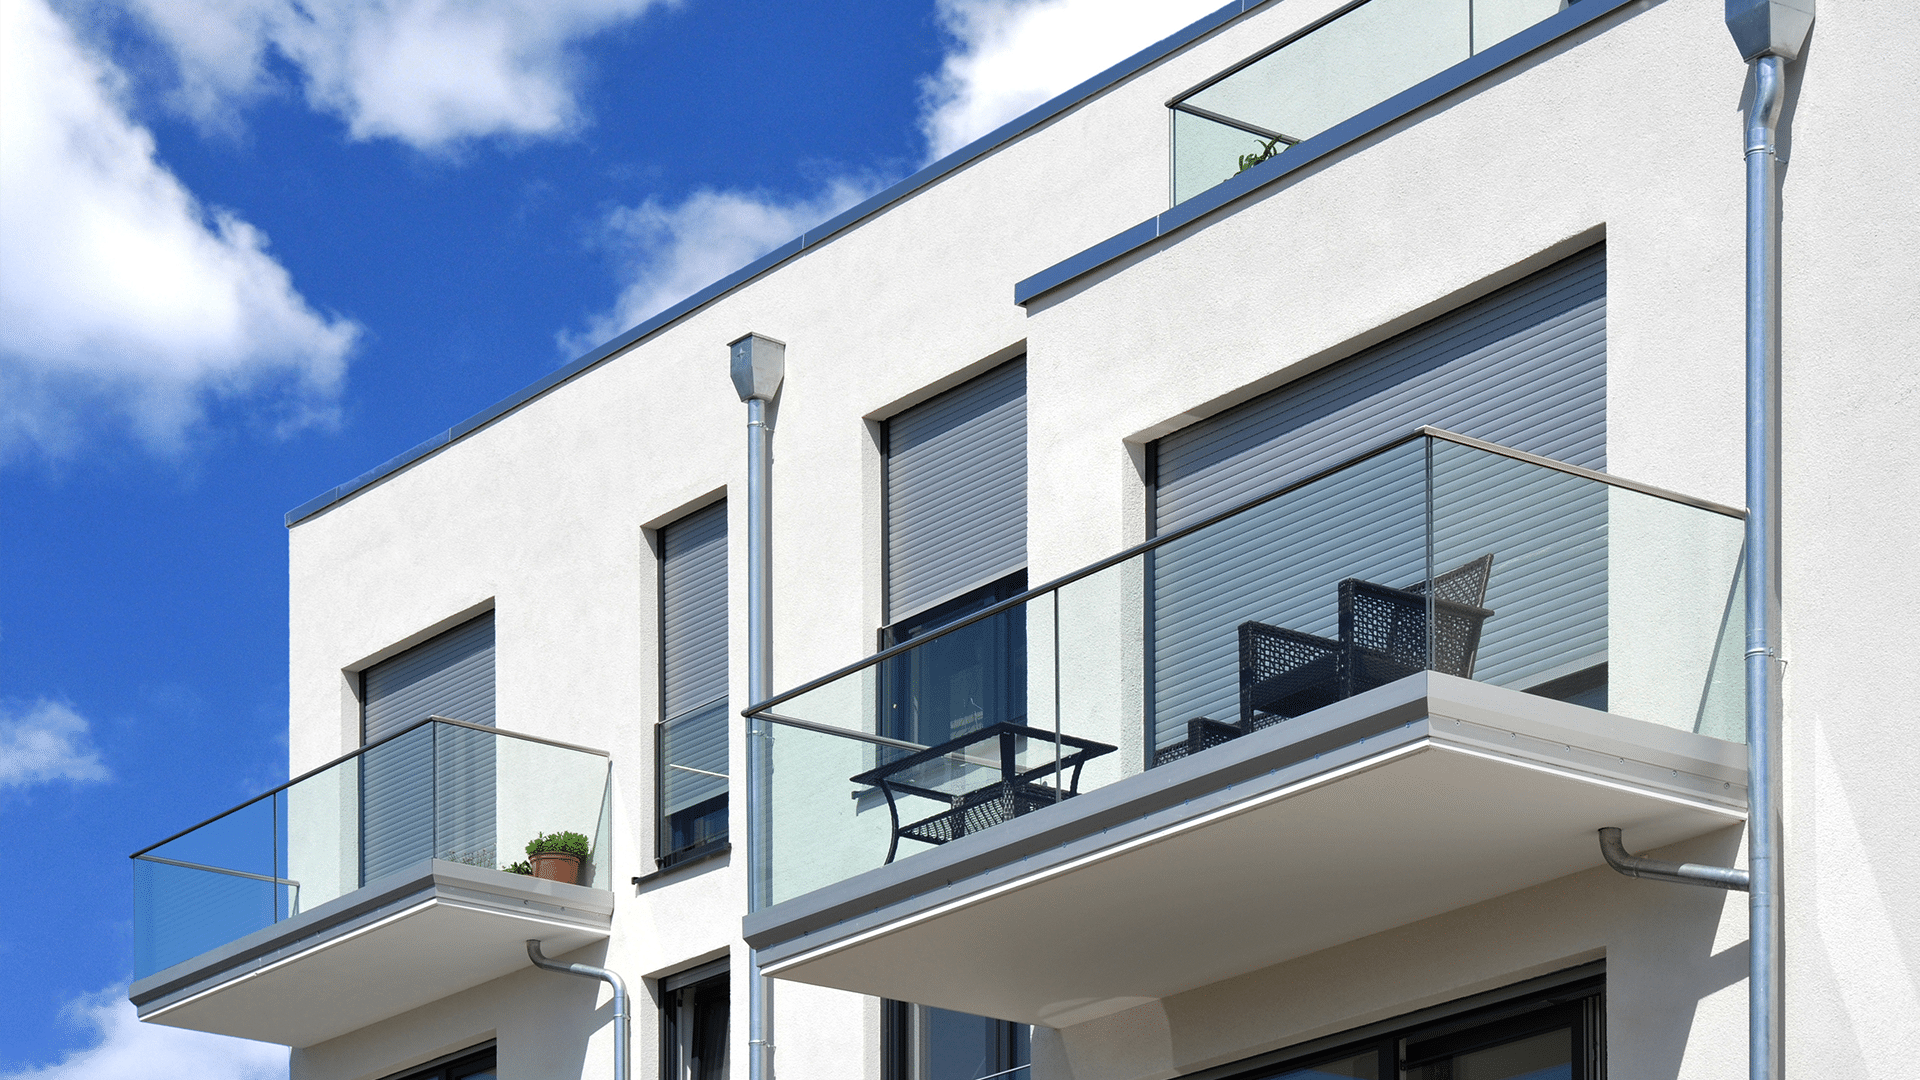 Hella präsentiert dunkelgraue Rollläden als Sonnenschutz am Balkon eines weißen Hauses mit schwarzer Sitzgarnitur.